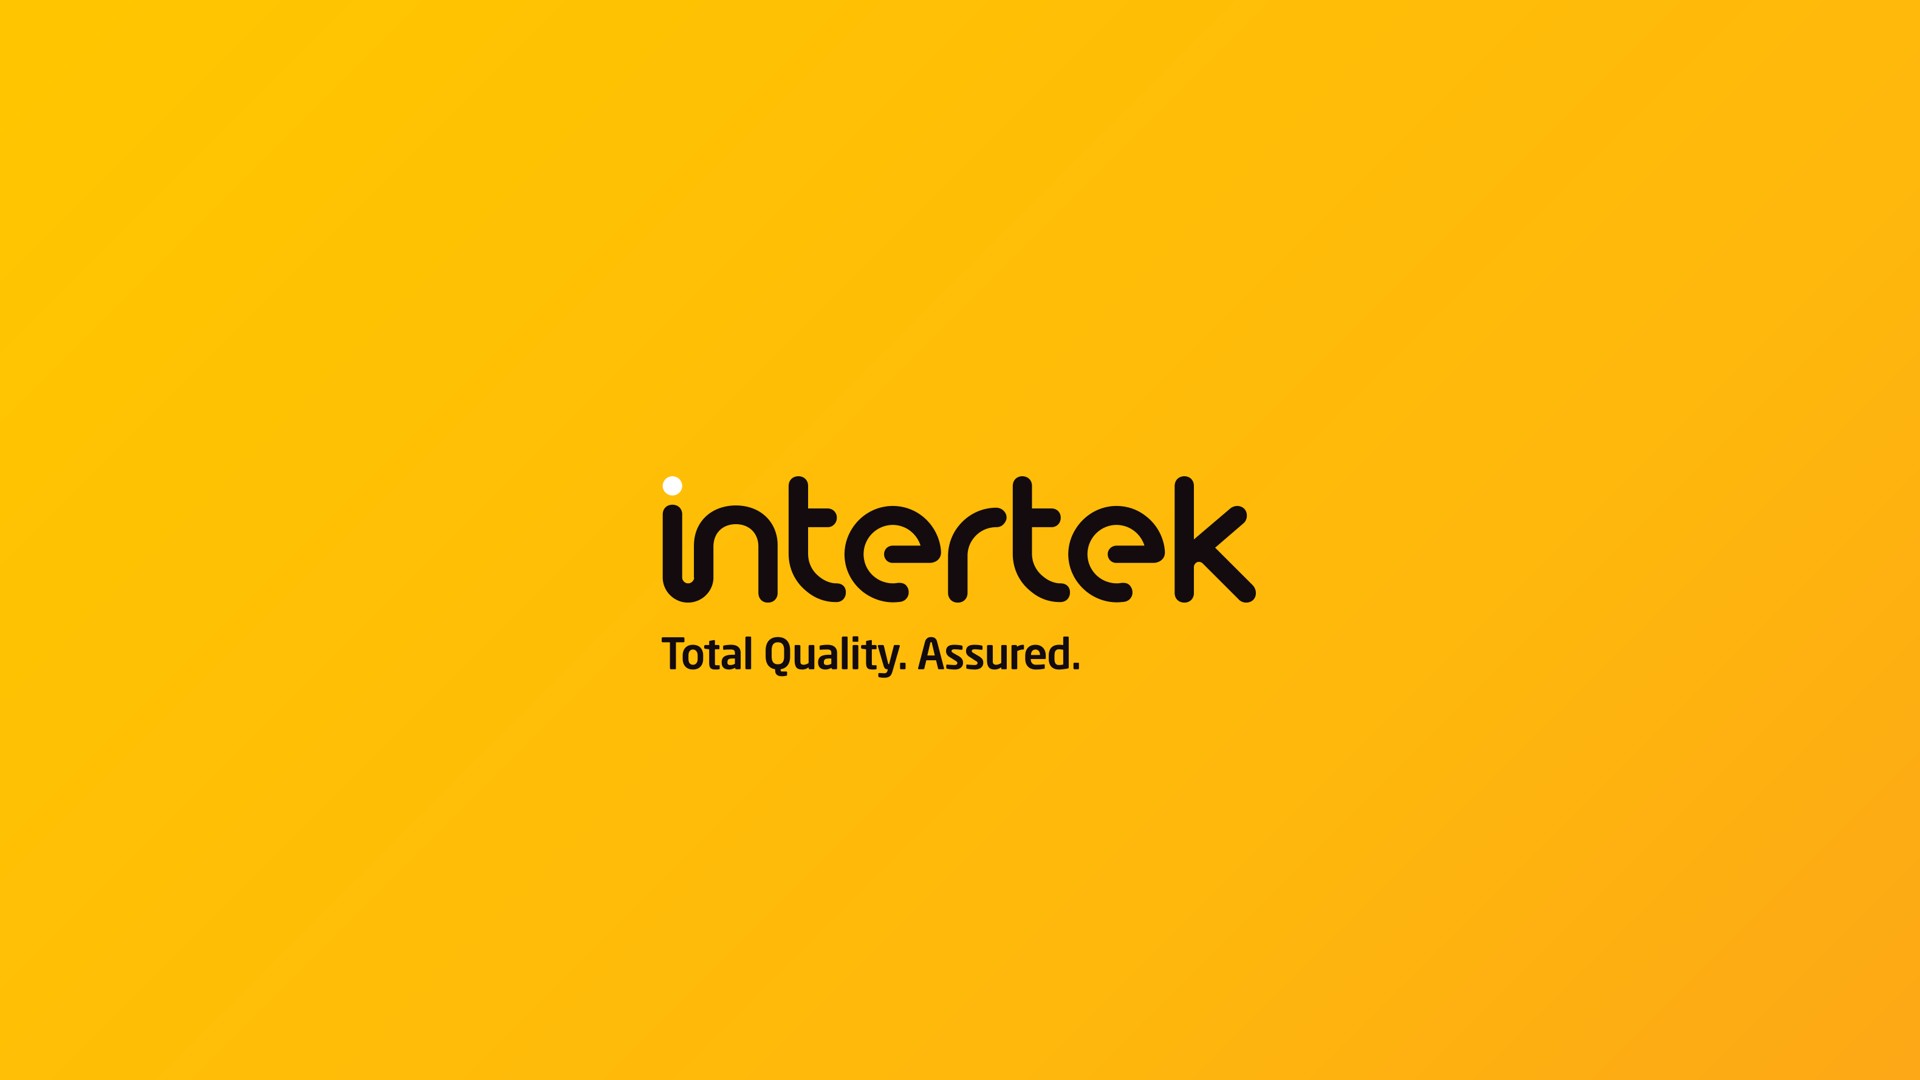 total quality assured | Intertek